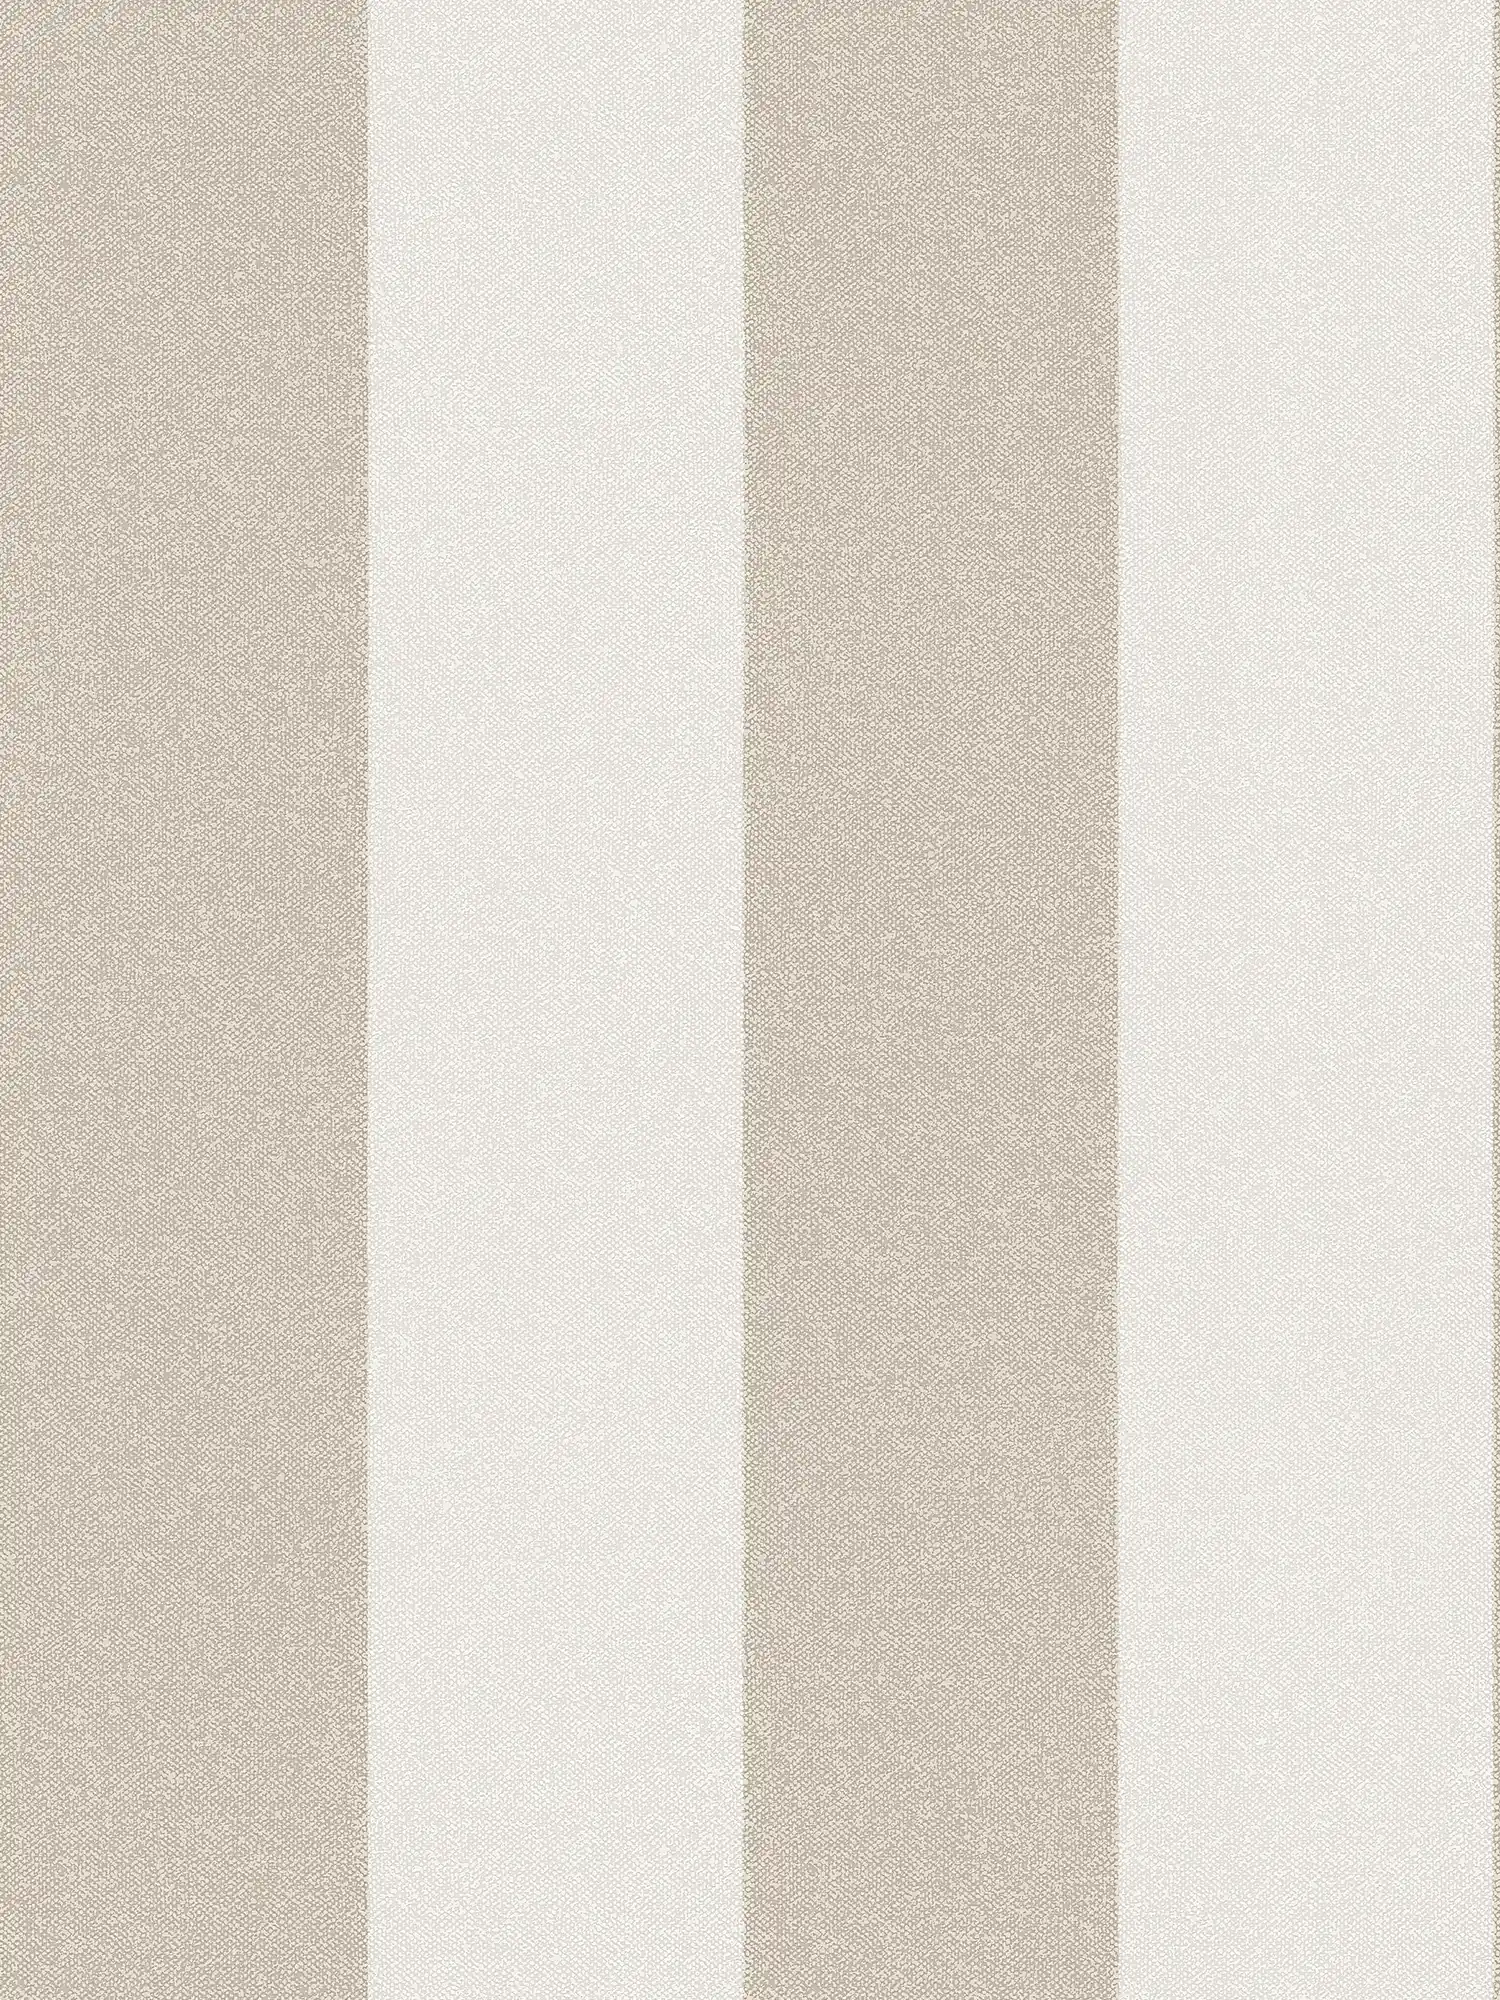 Papel pintado de rayas en bloque con aspecto de lino - marrón, crema, beige
